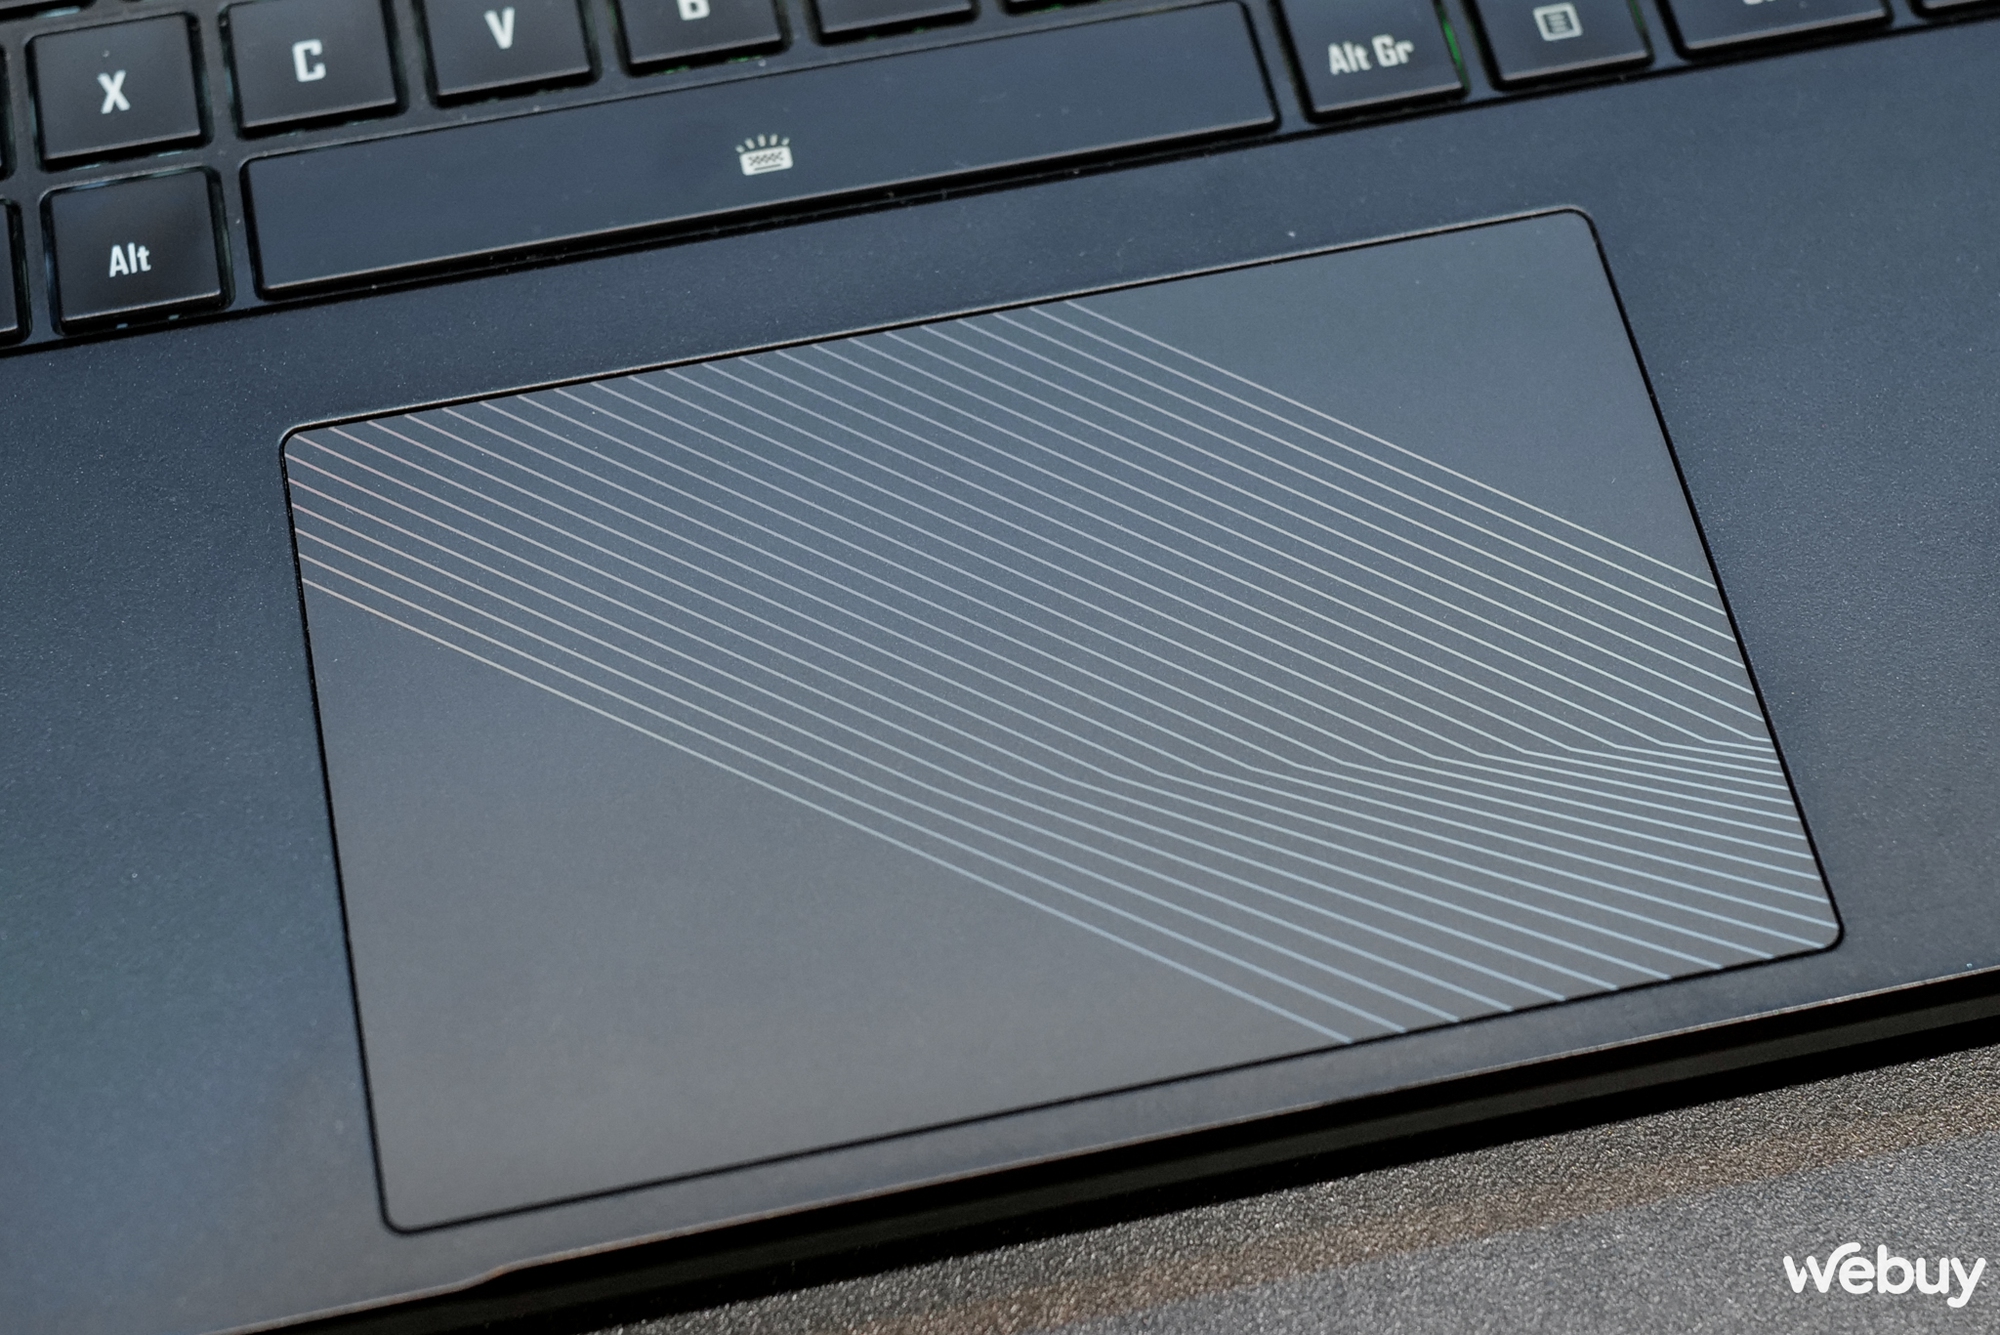 Trên tay bộ 4 laptop Gigabyte AORUS: Đa dạng về kích thước và công nghệ - Ảnh 11.